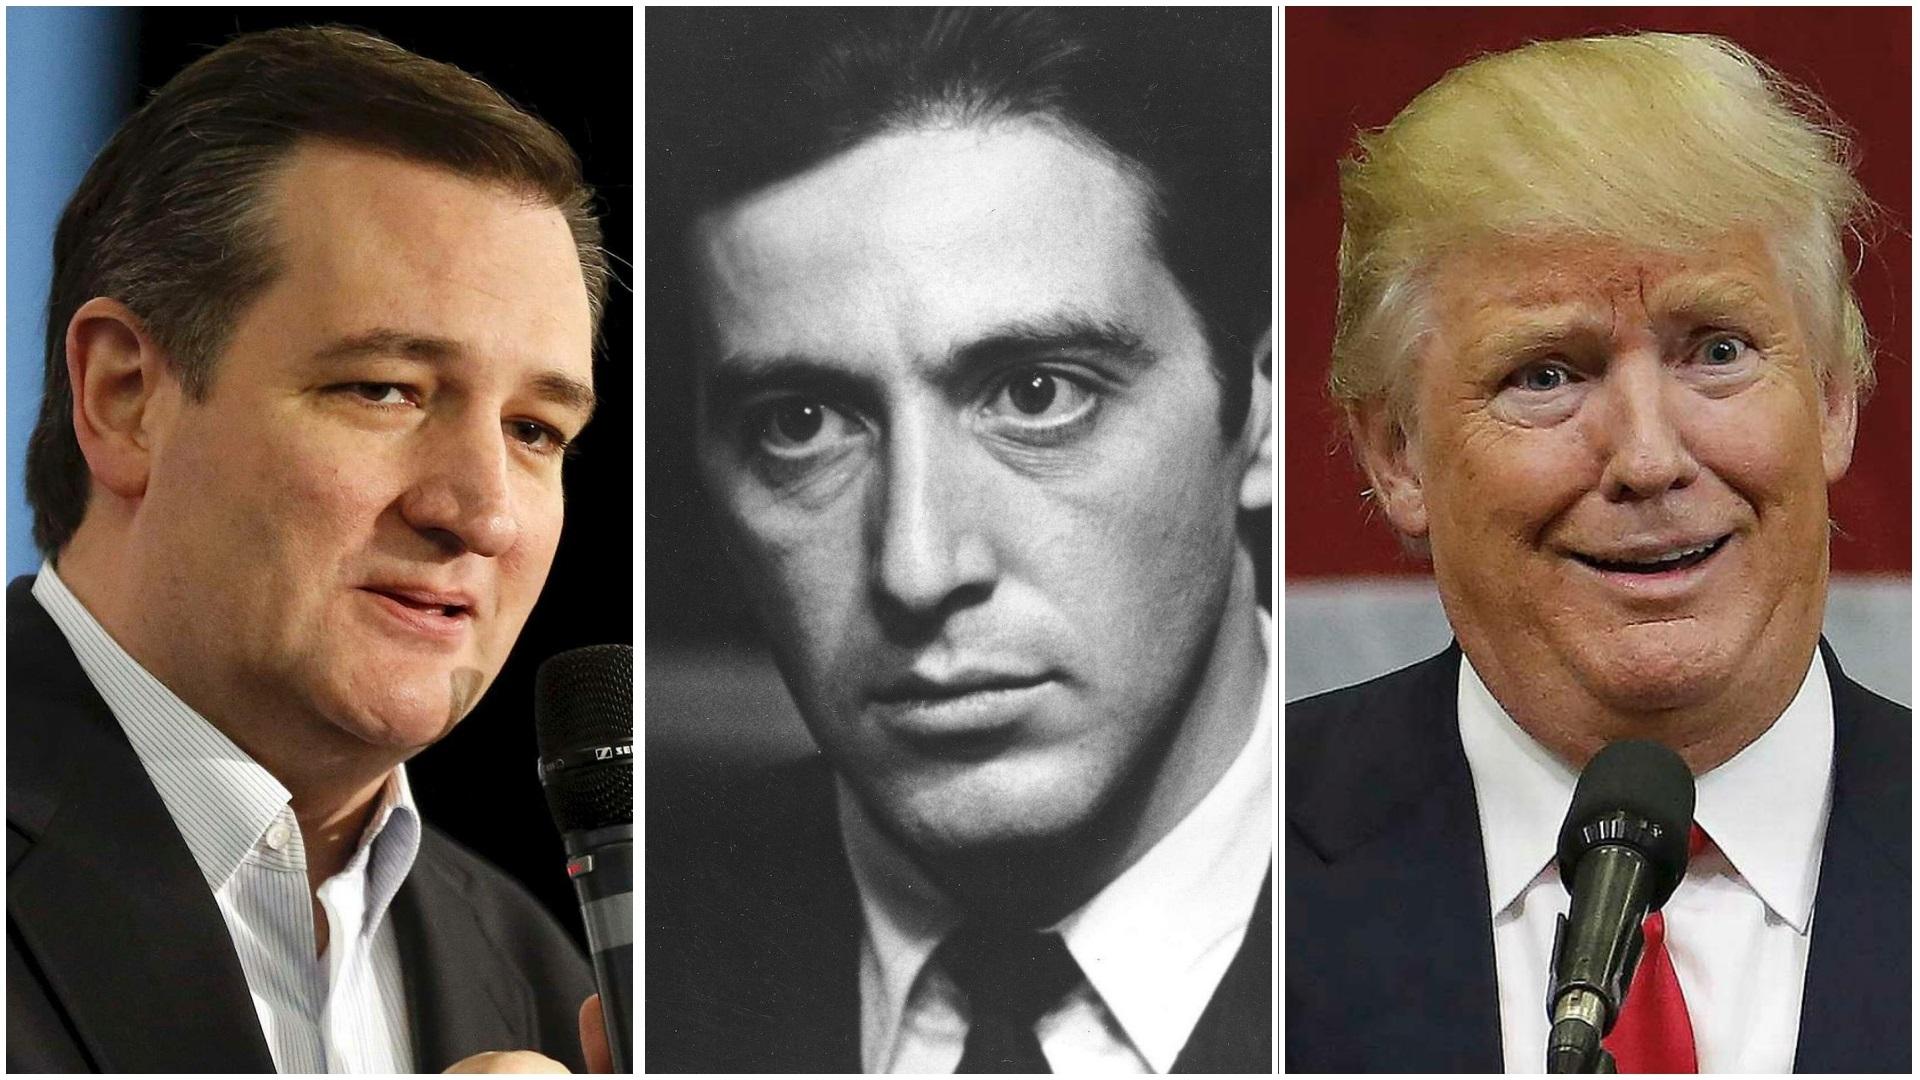 Ted Cruz sammenligner Donald Trump med mafiasjefen Michael Corleone etter det han opplever som trusler fra Trump-tilhengere mot landsmøtedelegater fra Colorado. - Presidentembetet skal ikke være som Cosa Nostra, sa Cruz på amerikansk radio.